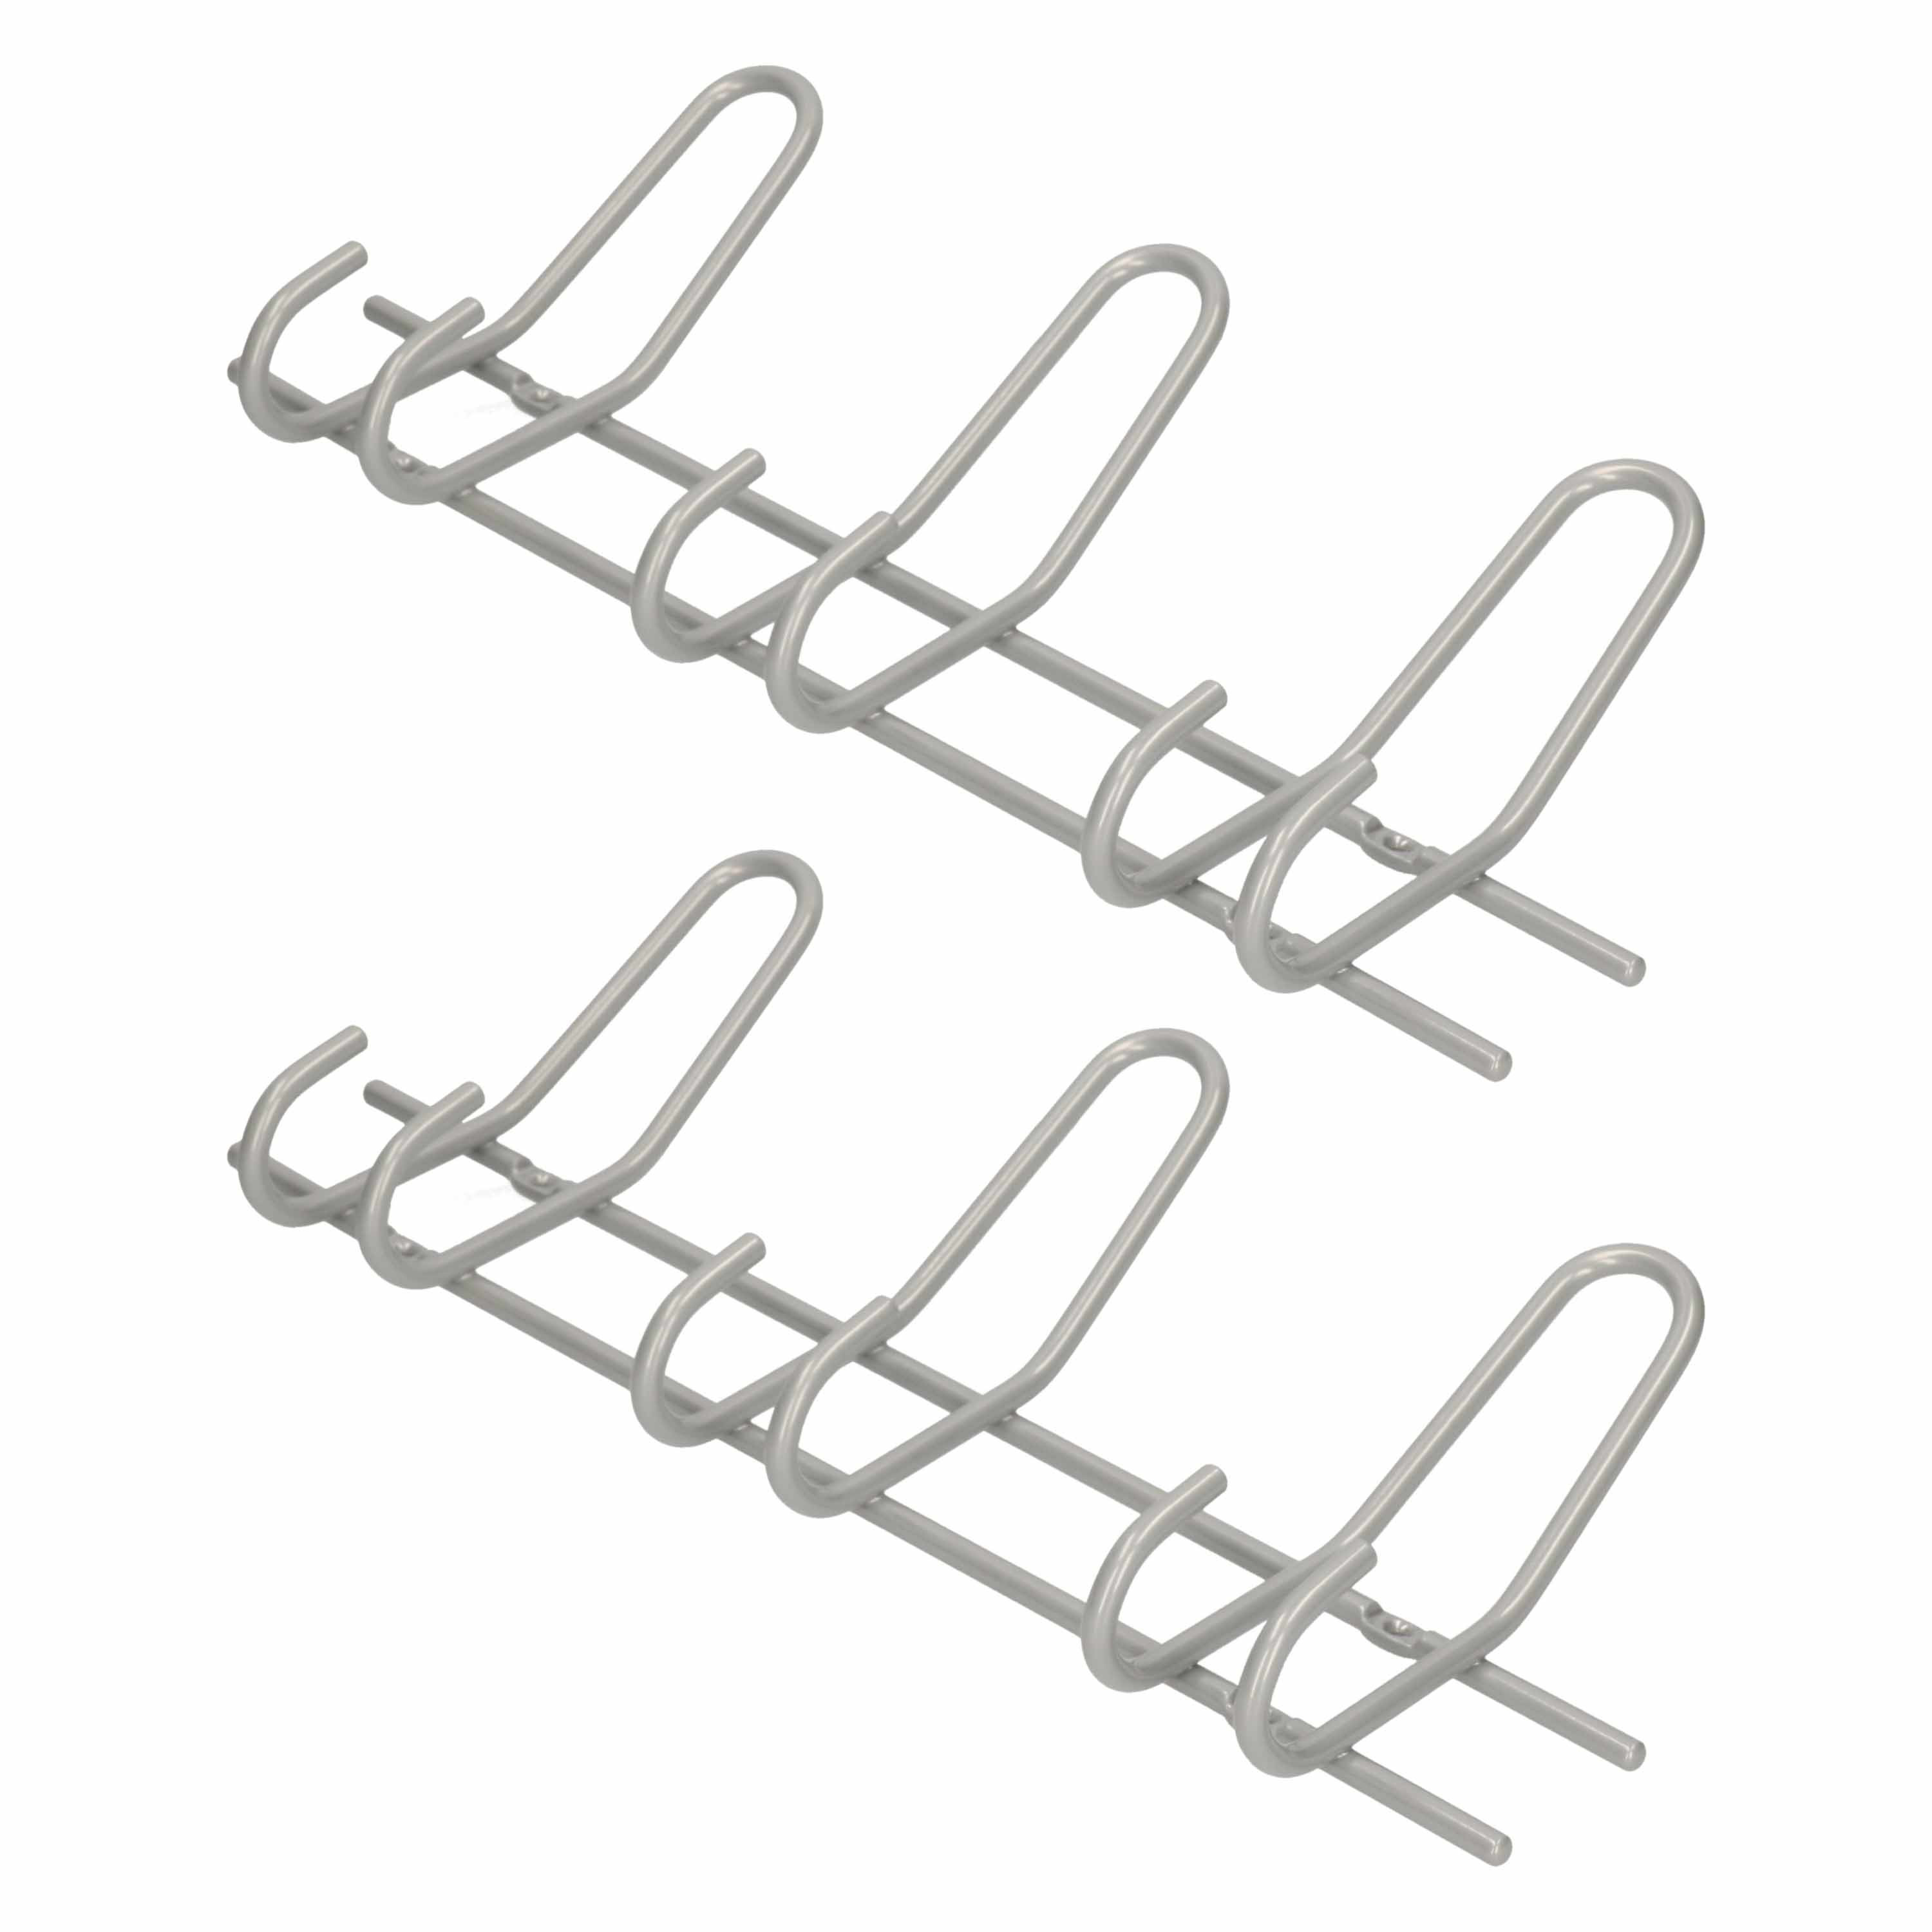 2x Zilveren garderobekapstokken-jashaken-wandkapstokken metaal 3x dubbele smalle haak 16,5 x 39 cm